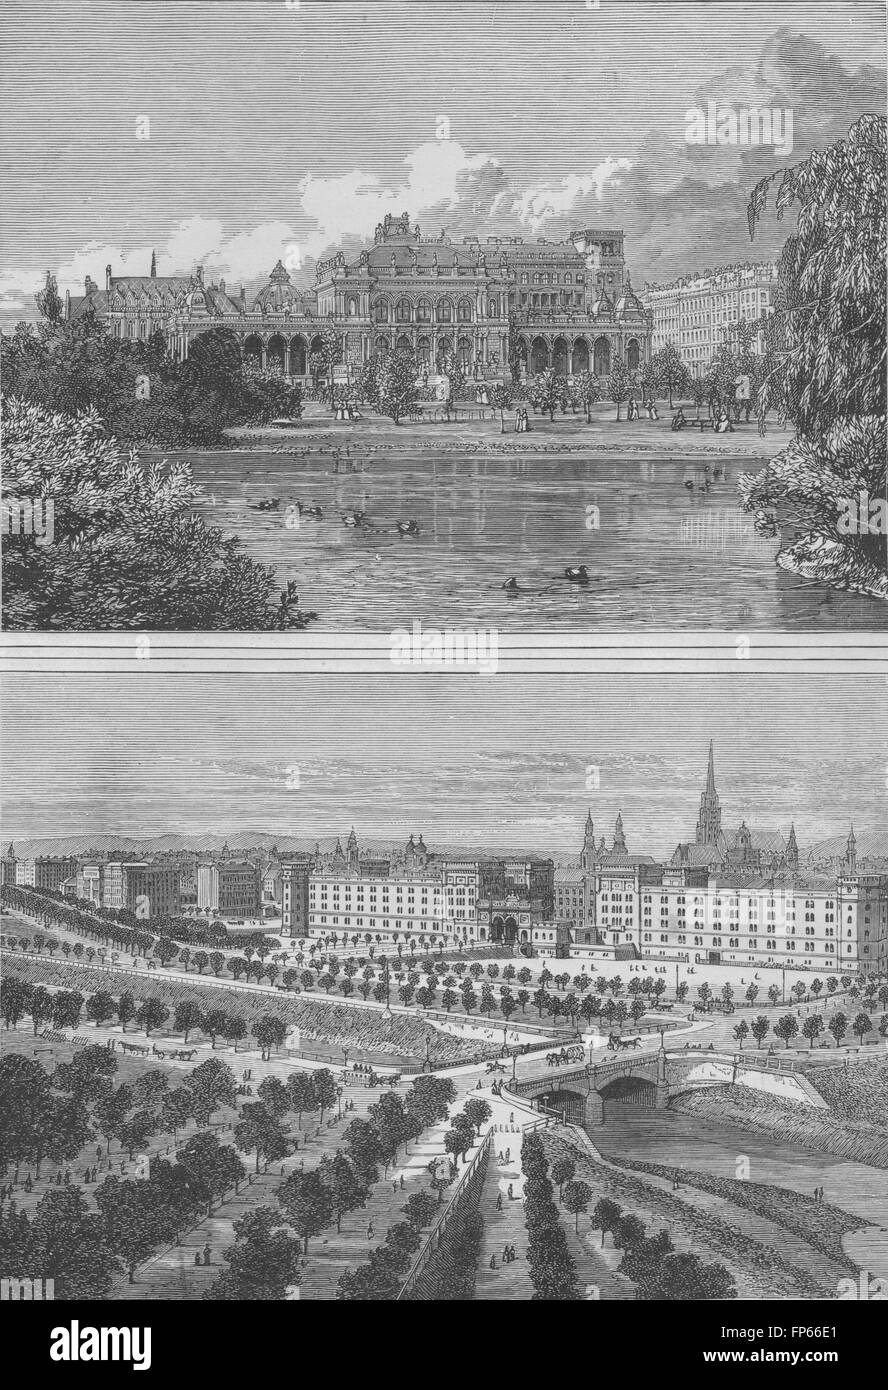 Viena: el Parque de la ciudad y el bulevar Ringstrasse, grabado antiguo 1882 Foto de stock